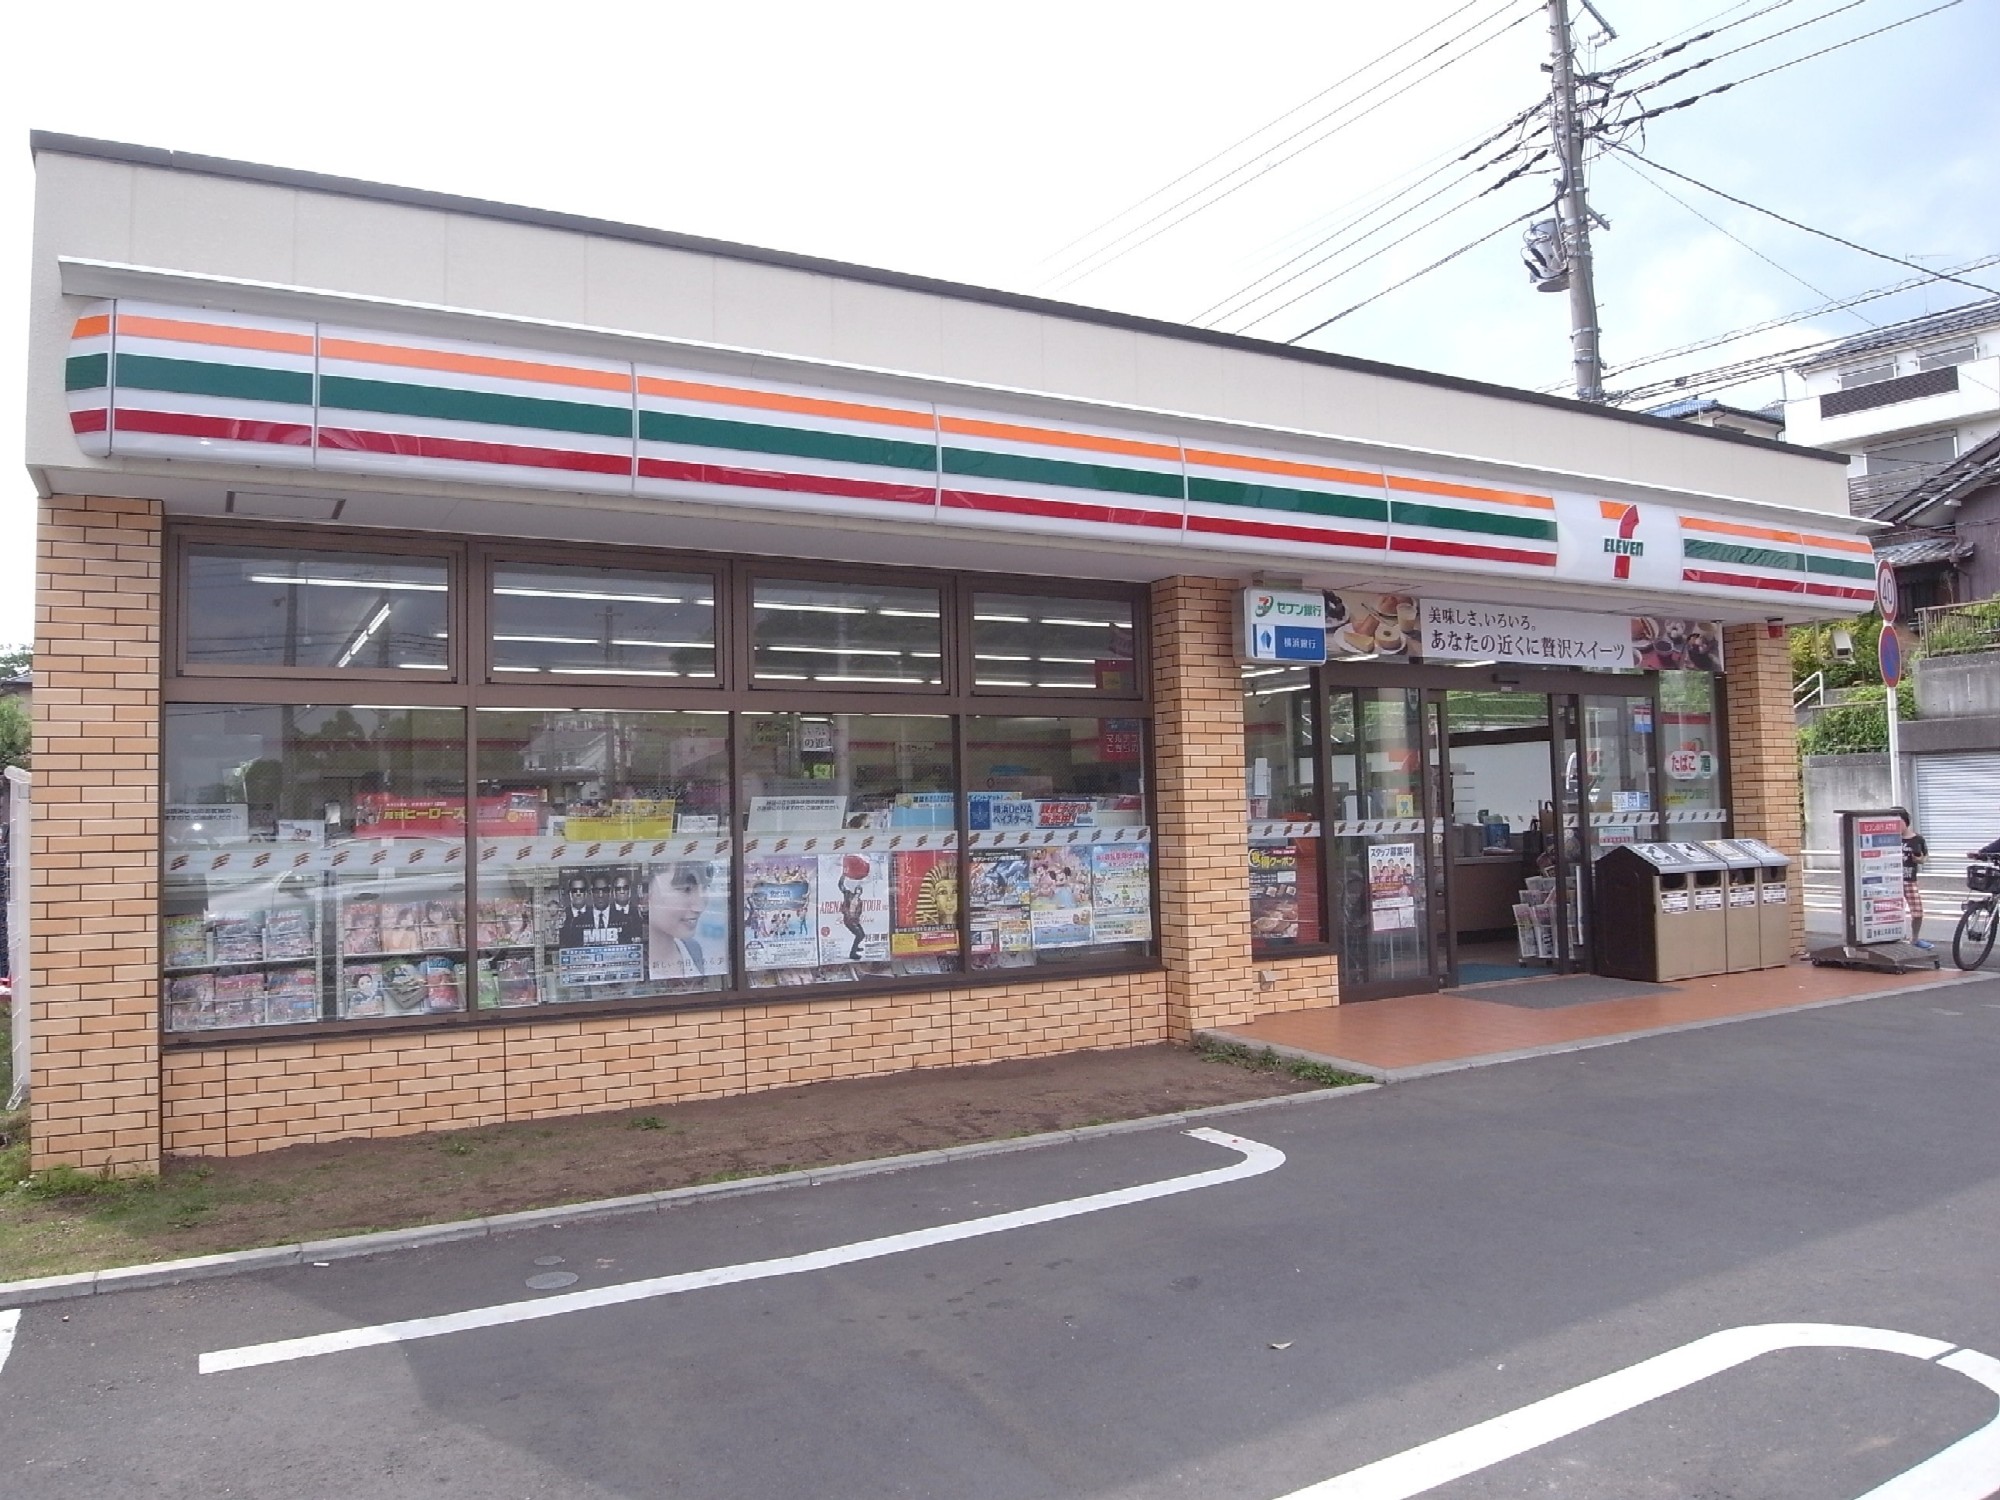 Convenience store. Seven-Eleven Sugata 200m to the store (convenience store)